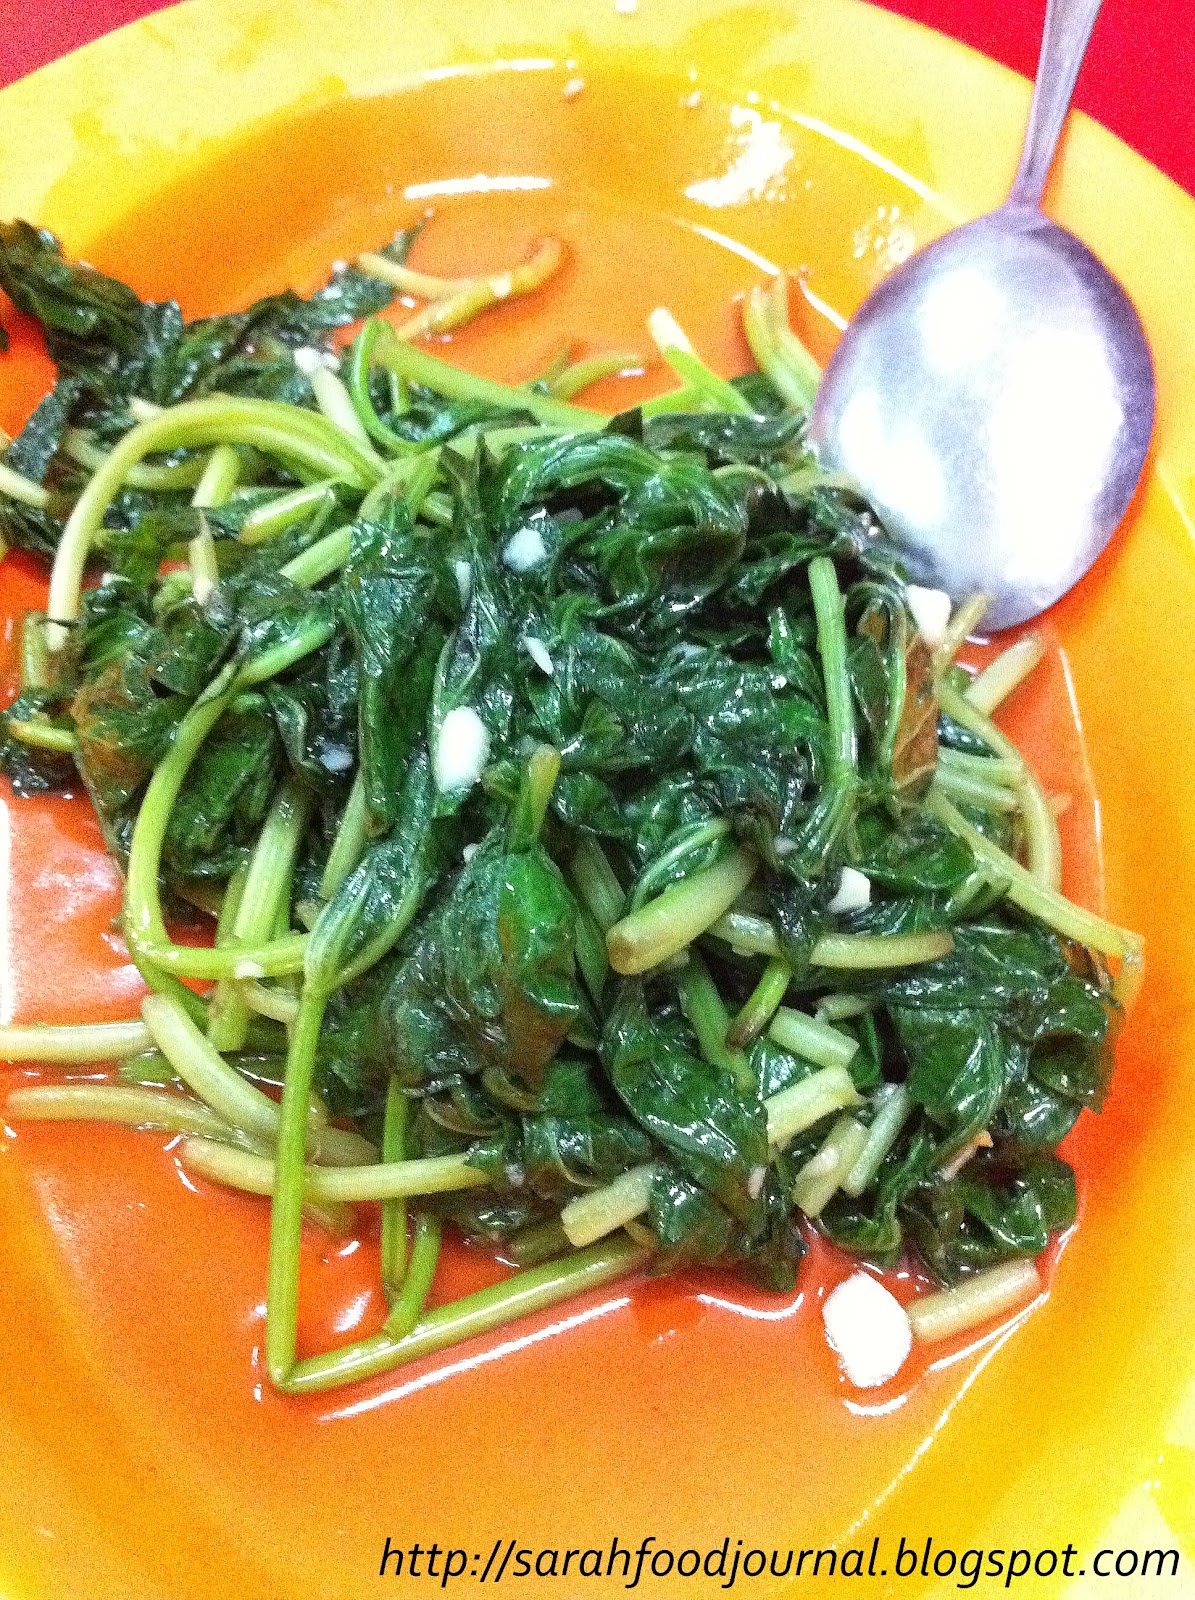 Sarah's Food Journal: Dinner @ Fung Seng Lao, Kuala Lipis, Pahang, Malaysia